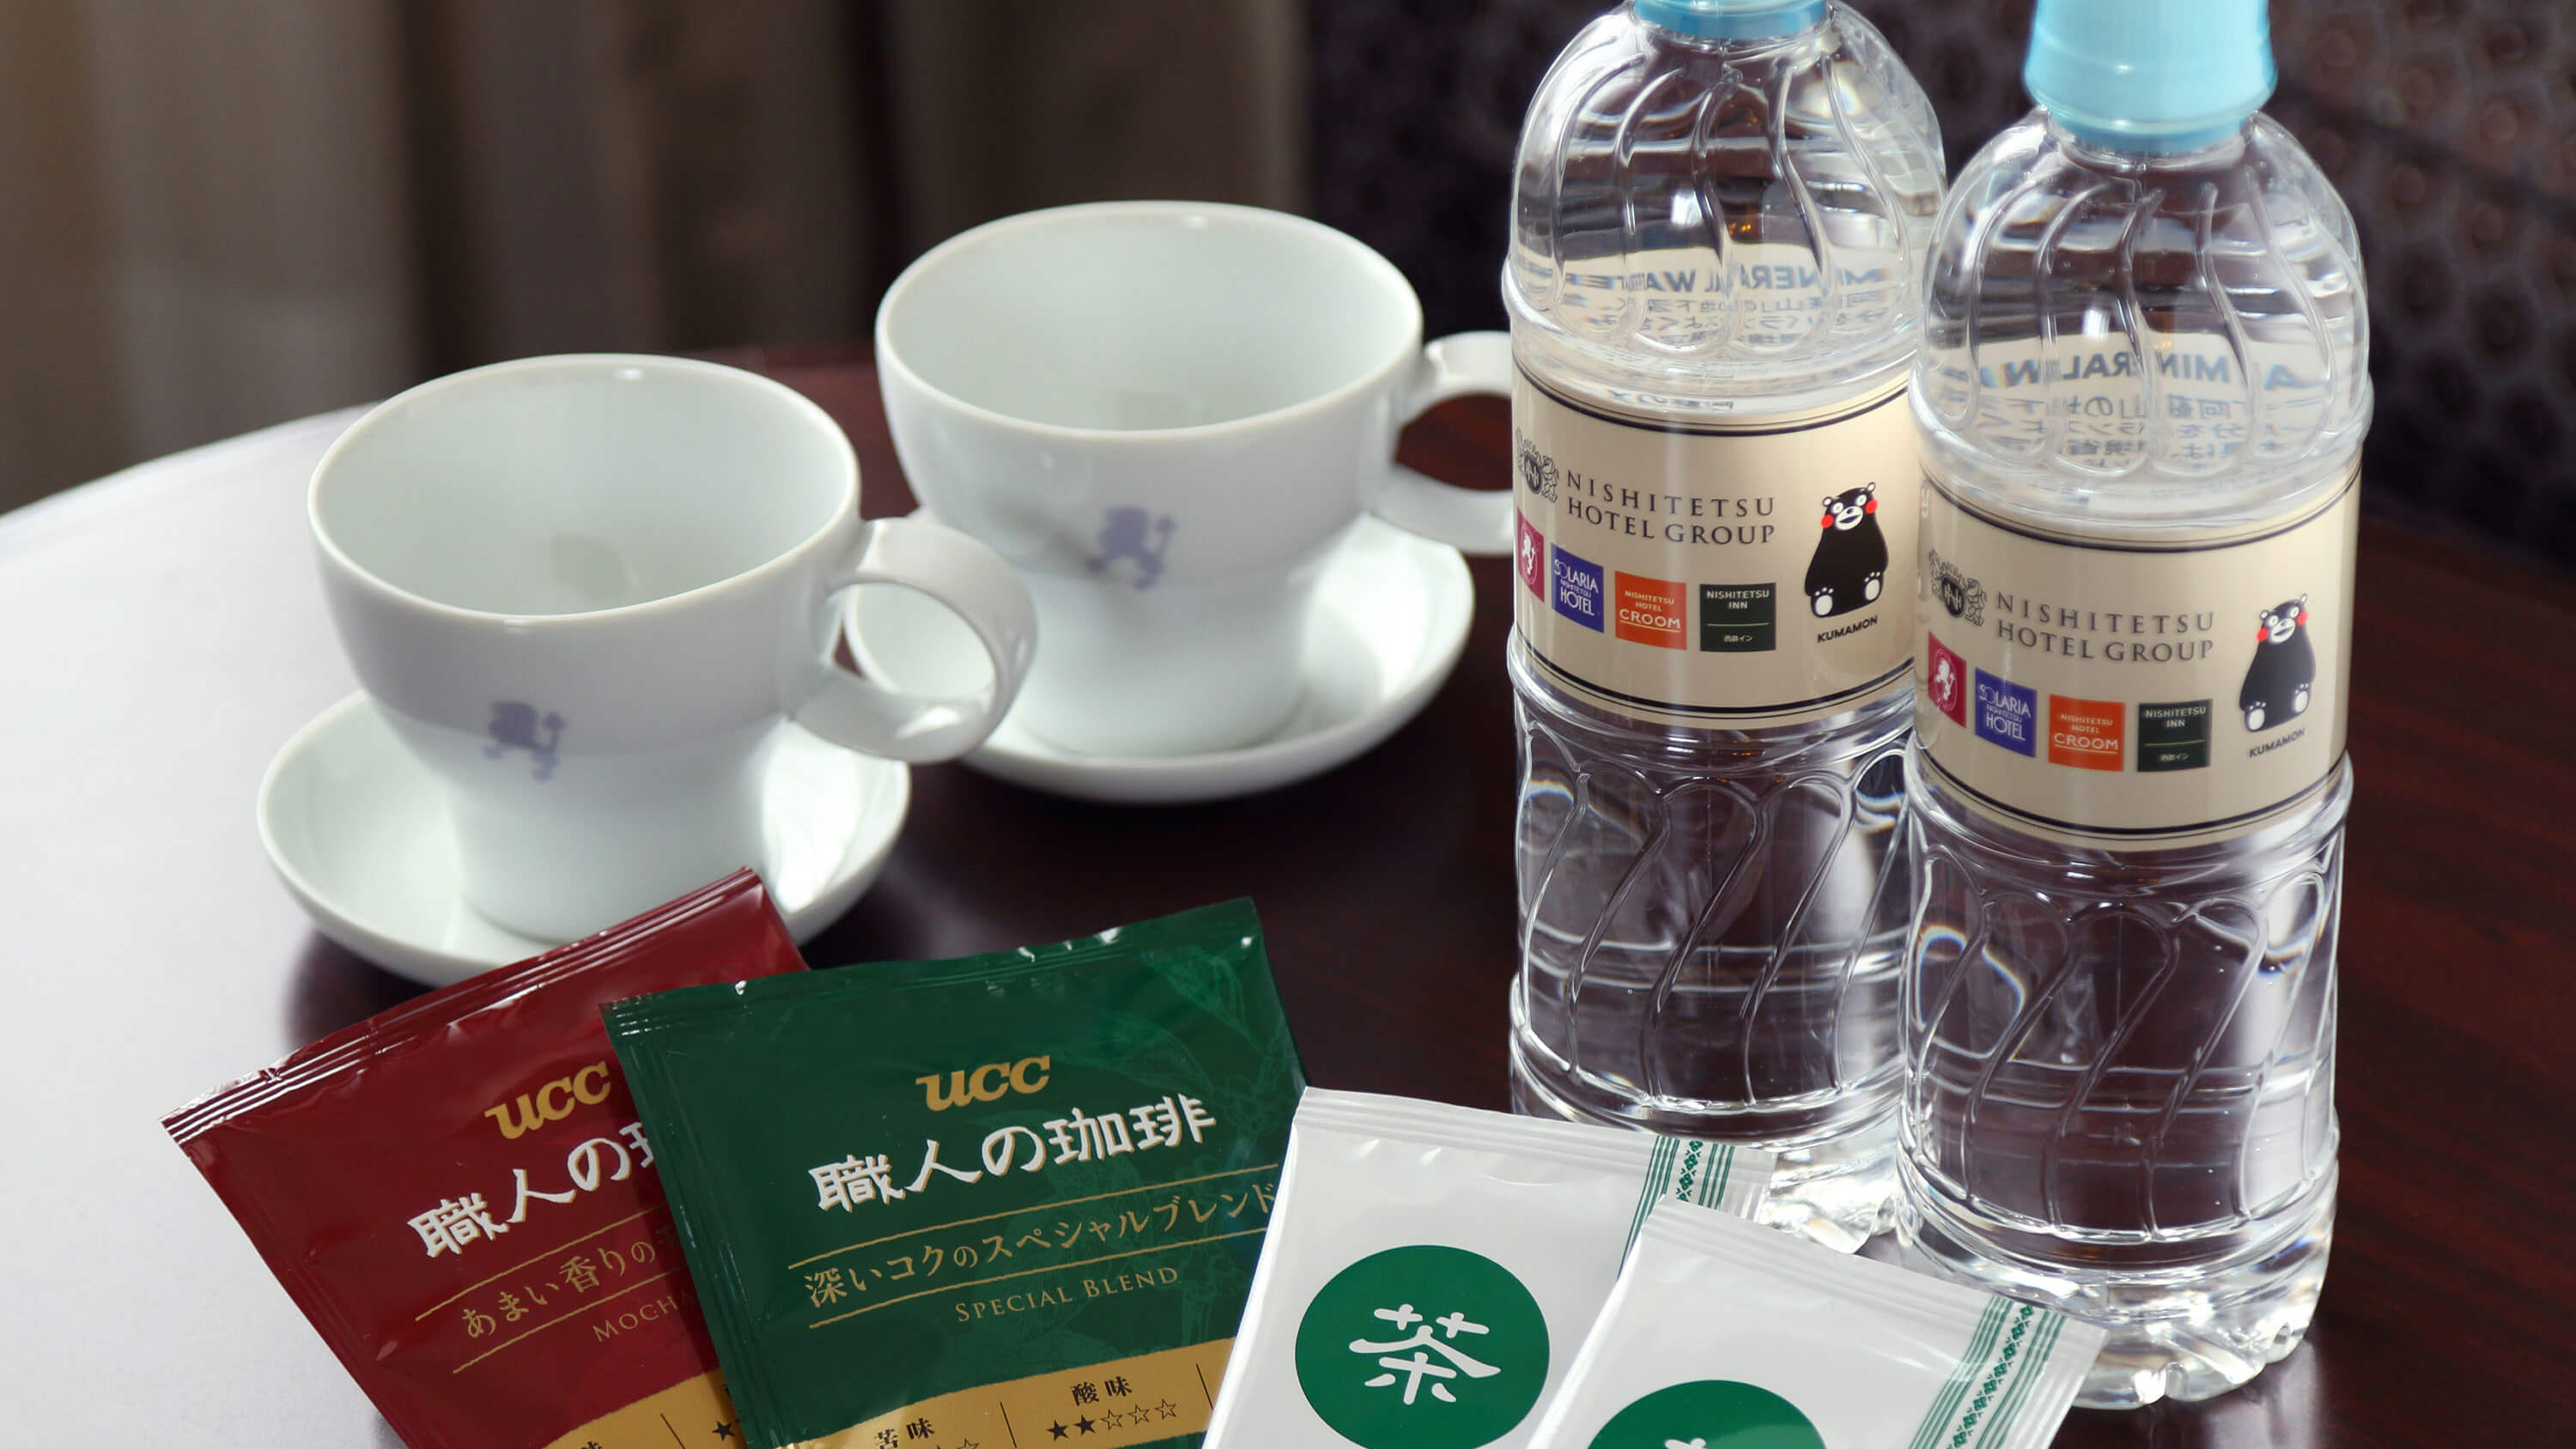 SERVICE / ミネラルウォーター・緑茶ティーバッグ・ドリップコーヒー人数様分無料